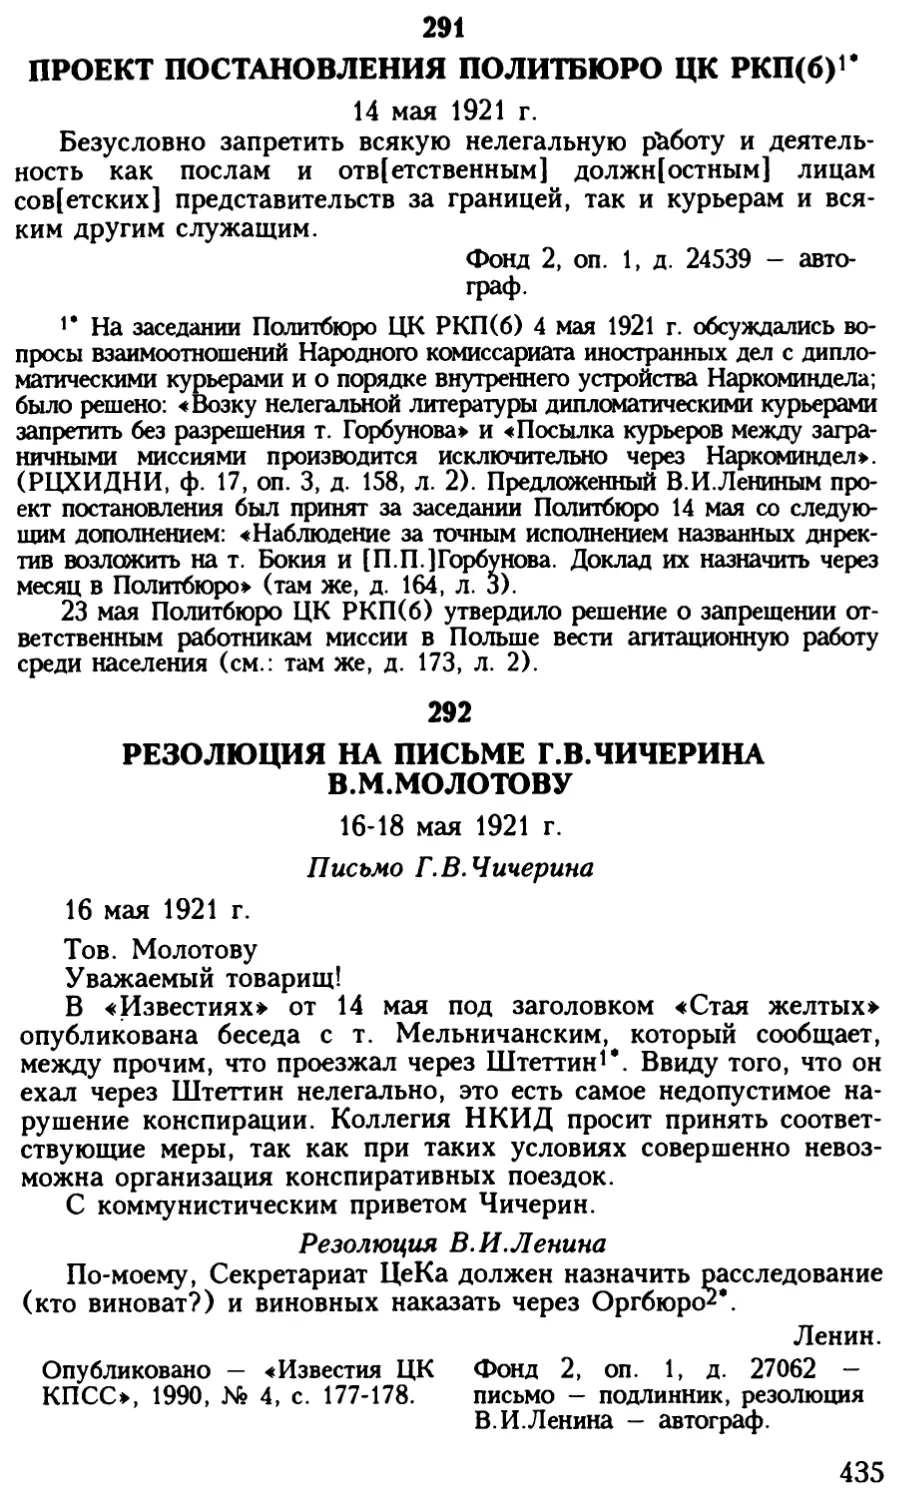 292. Резолюция на письме Г.В.Чичерина В.М.Молотову. 16—18 мая 1921 г